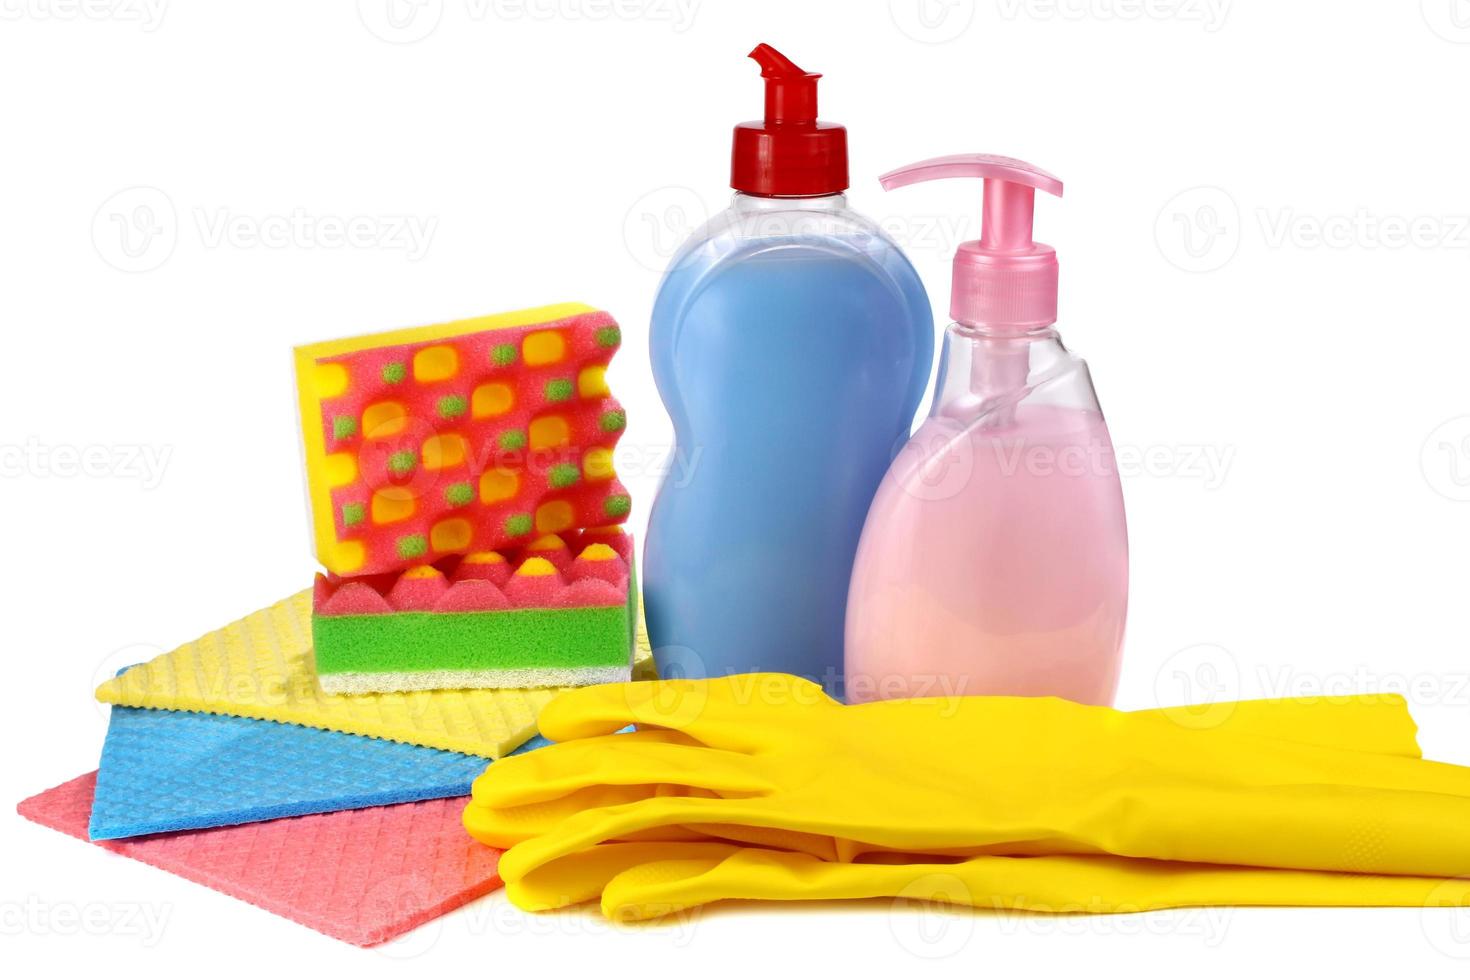 föremål för att tvätta och städa upp i ett kök foto